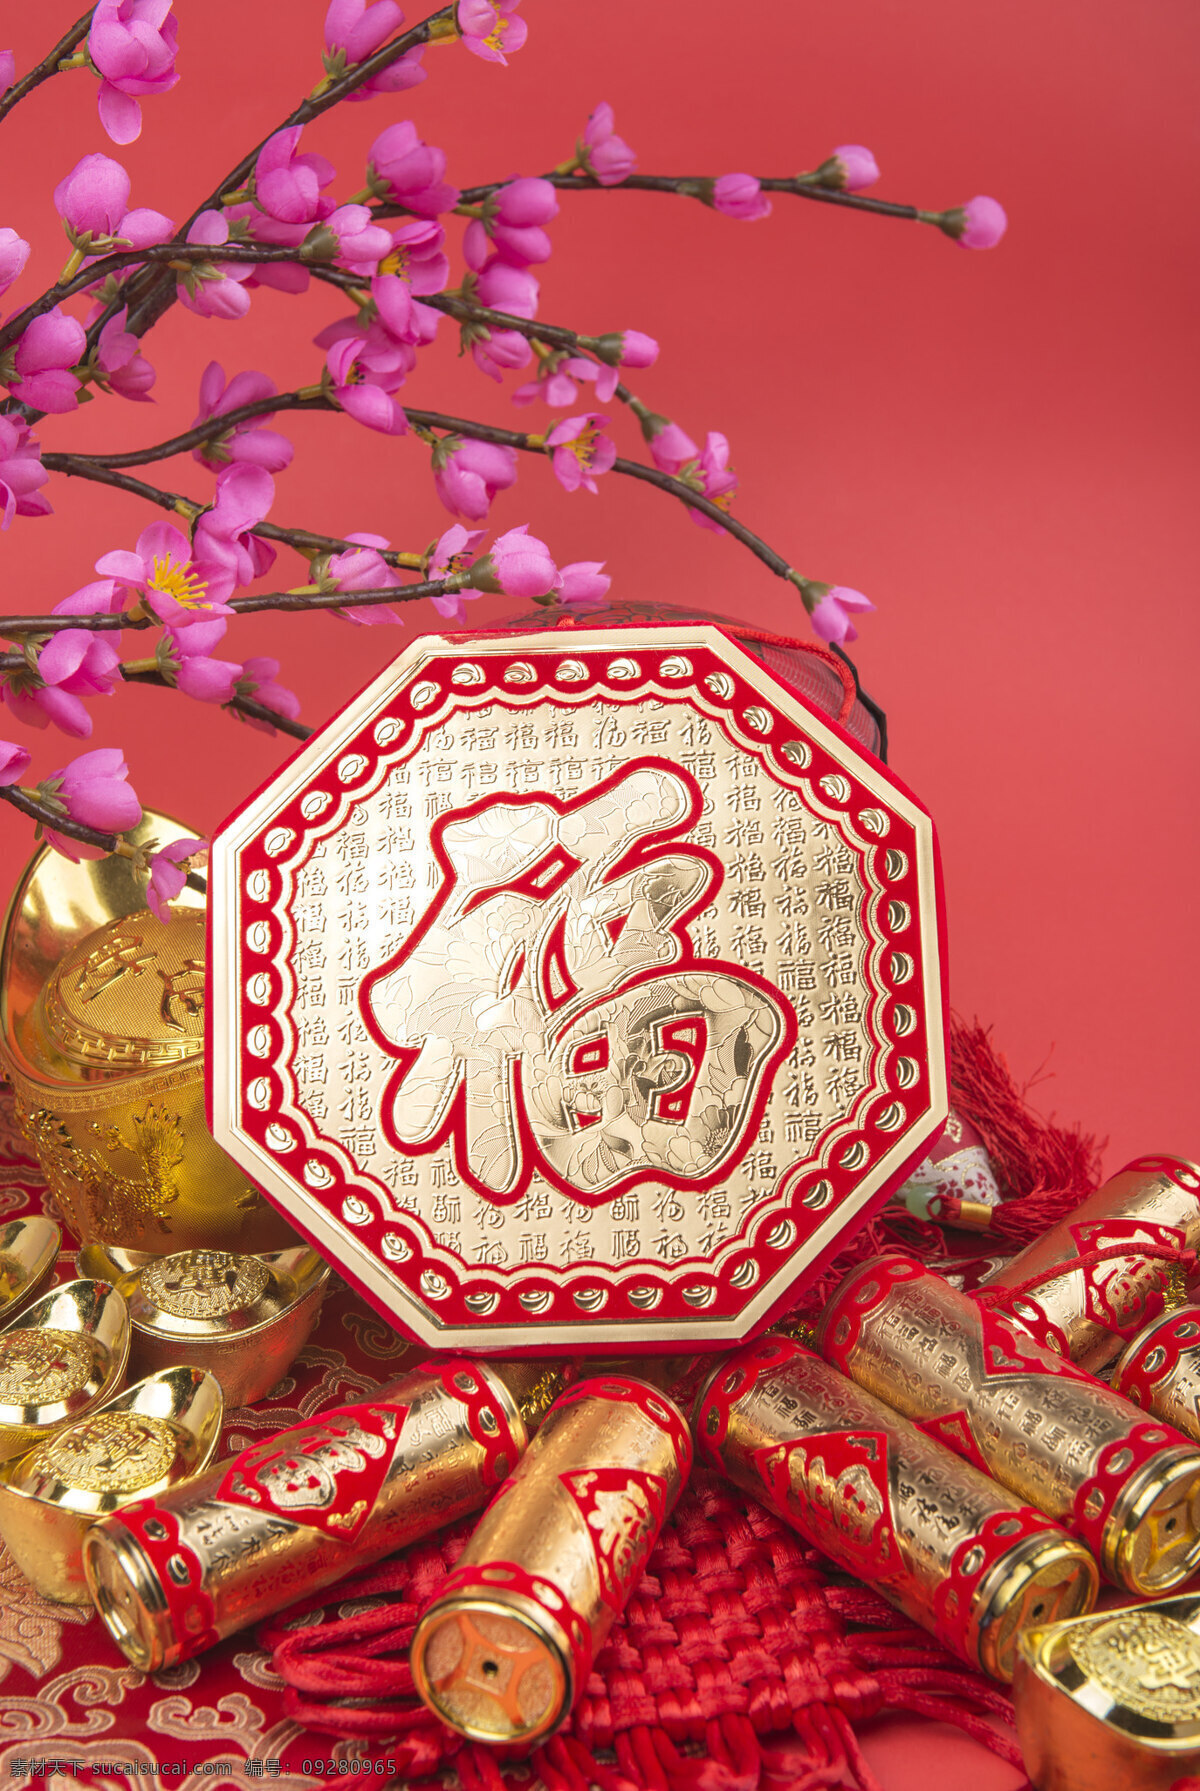 过年 中国 传统 文化 红色 中国结 喜庆 红包 传统文化 文化艺术